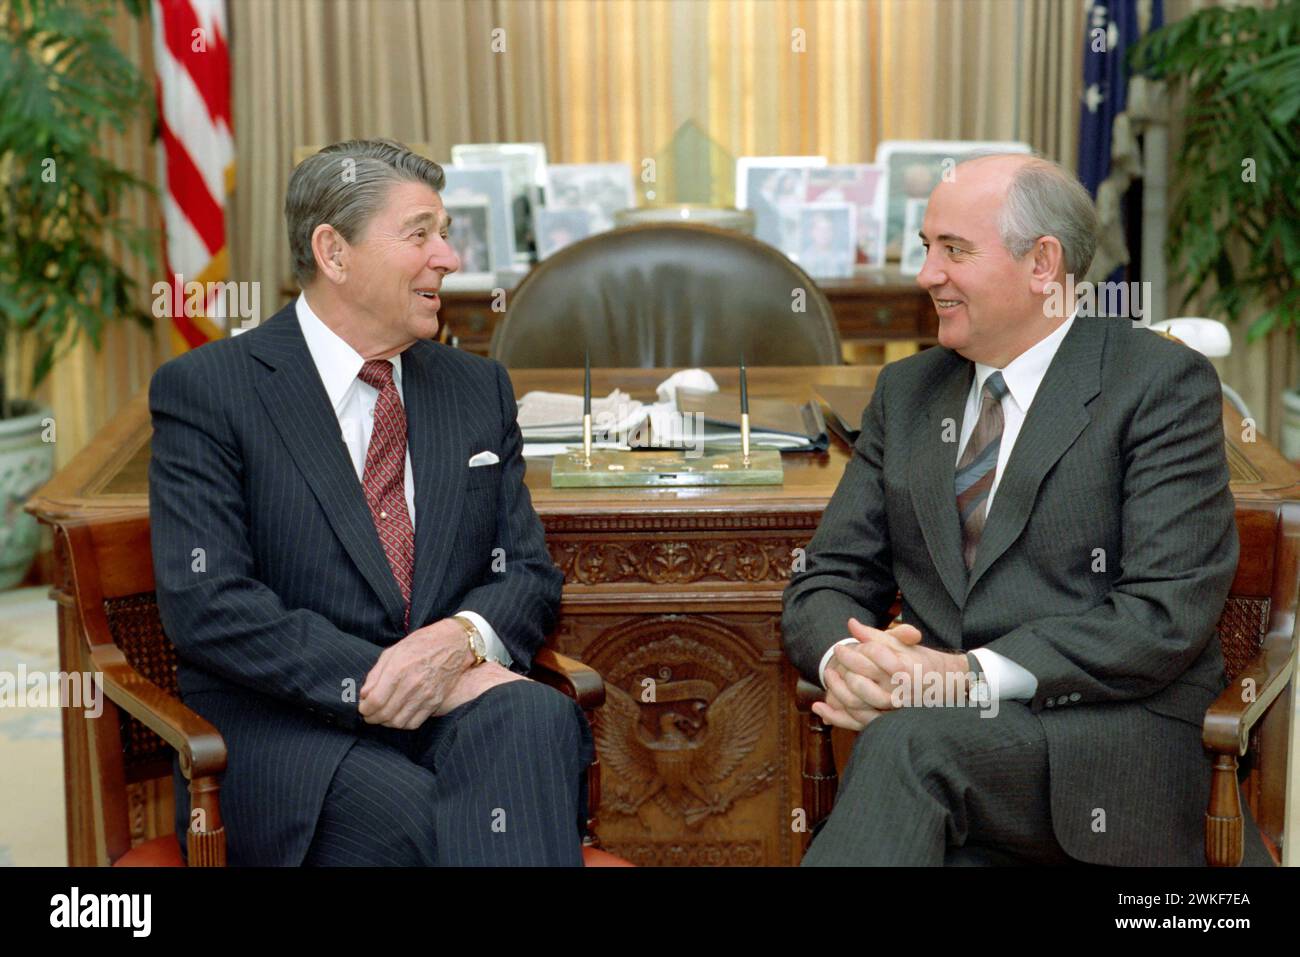 Mikhail Gorbatchev et Ronald Reagan. Portrait de l'ancien dirigeant de l'Union soviétique, Mikhaïl Sergueïevitch Gorbatchev (1931-2022) et du président américain Ronald Reagan (1911-2004) à la Maison Blanche, 1987 Banque D'Images